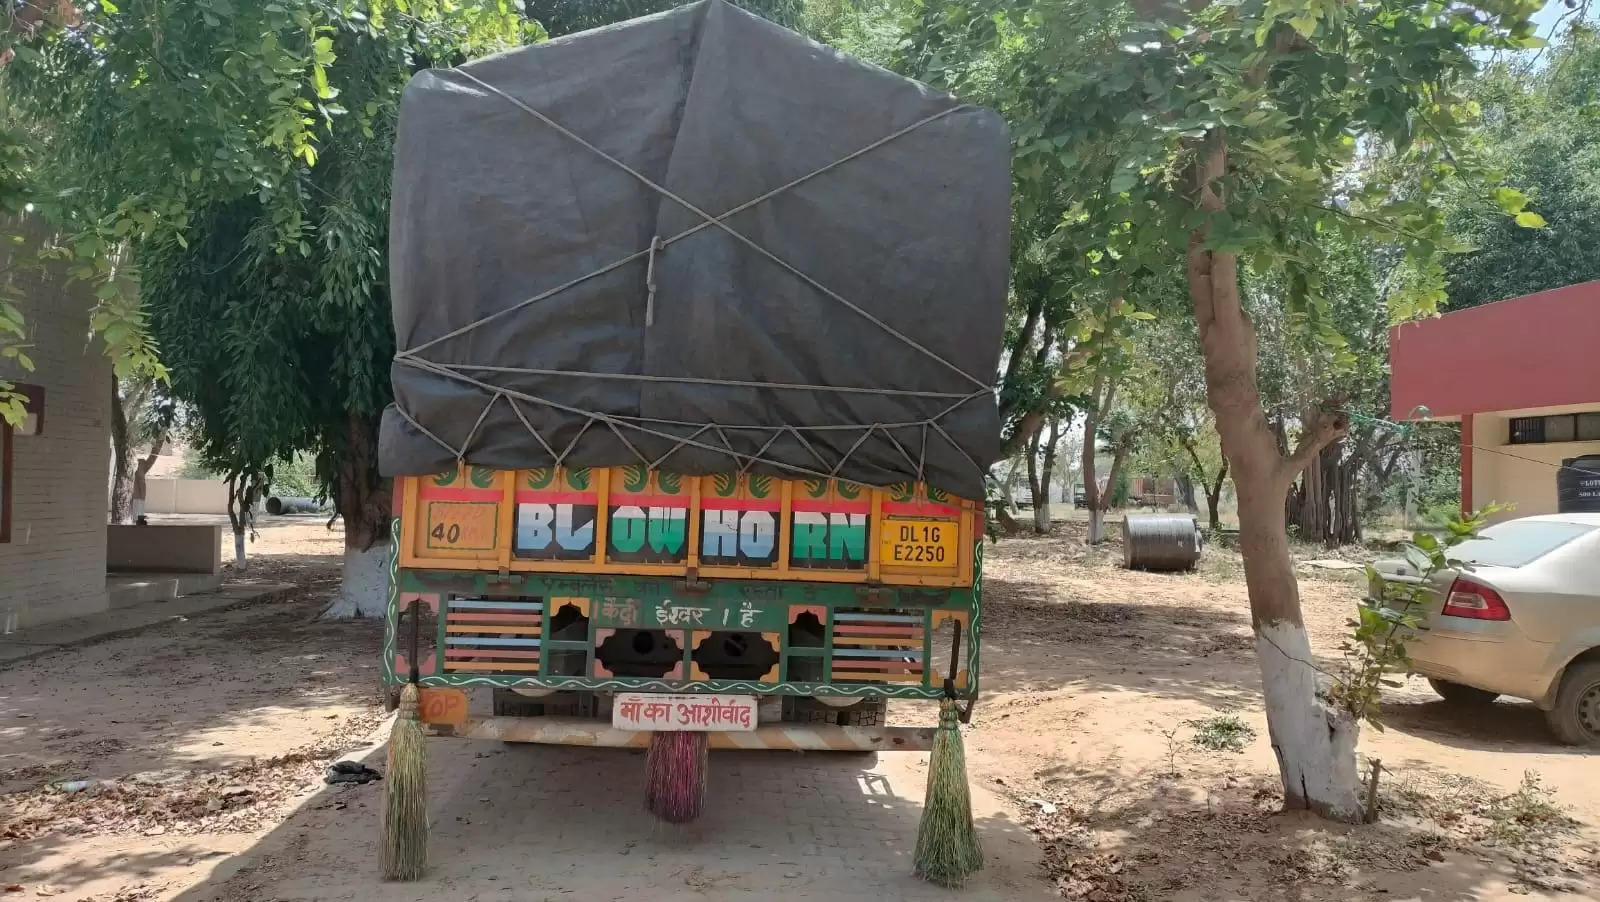  40 लाख रुपए की अंग्रेजी शराब से भरा हुआ ट्रक जब्त, 7800 बोतलें बरामद​​​​​​​